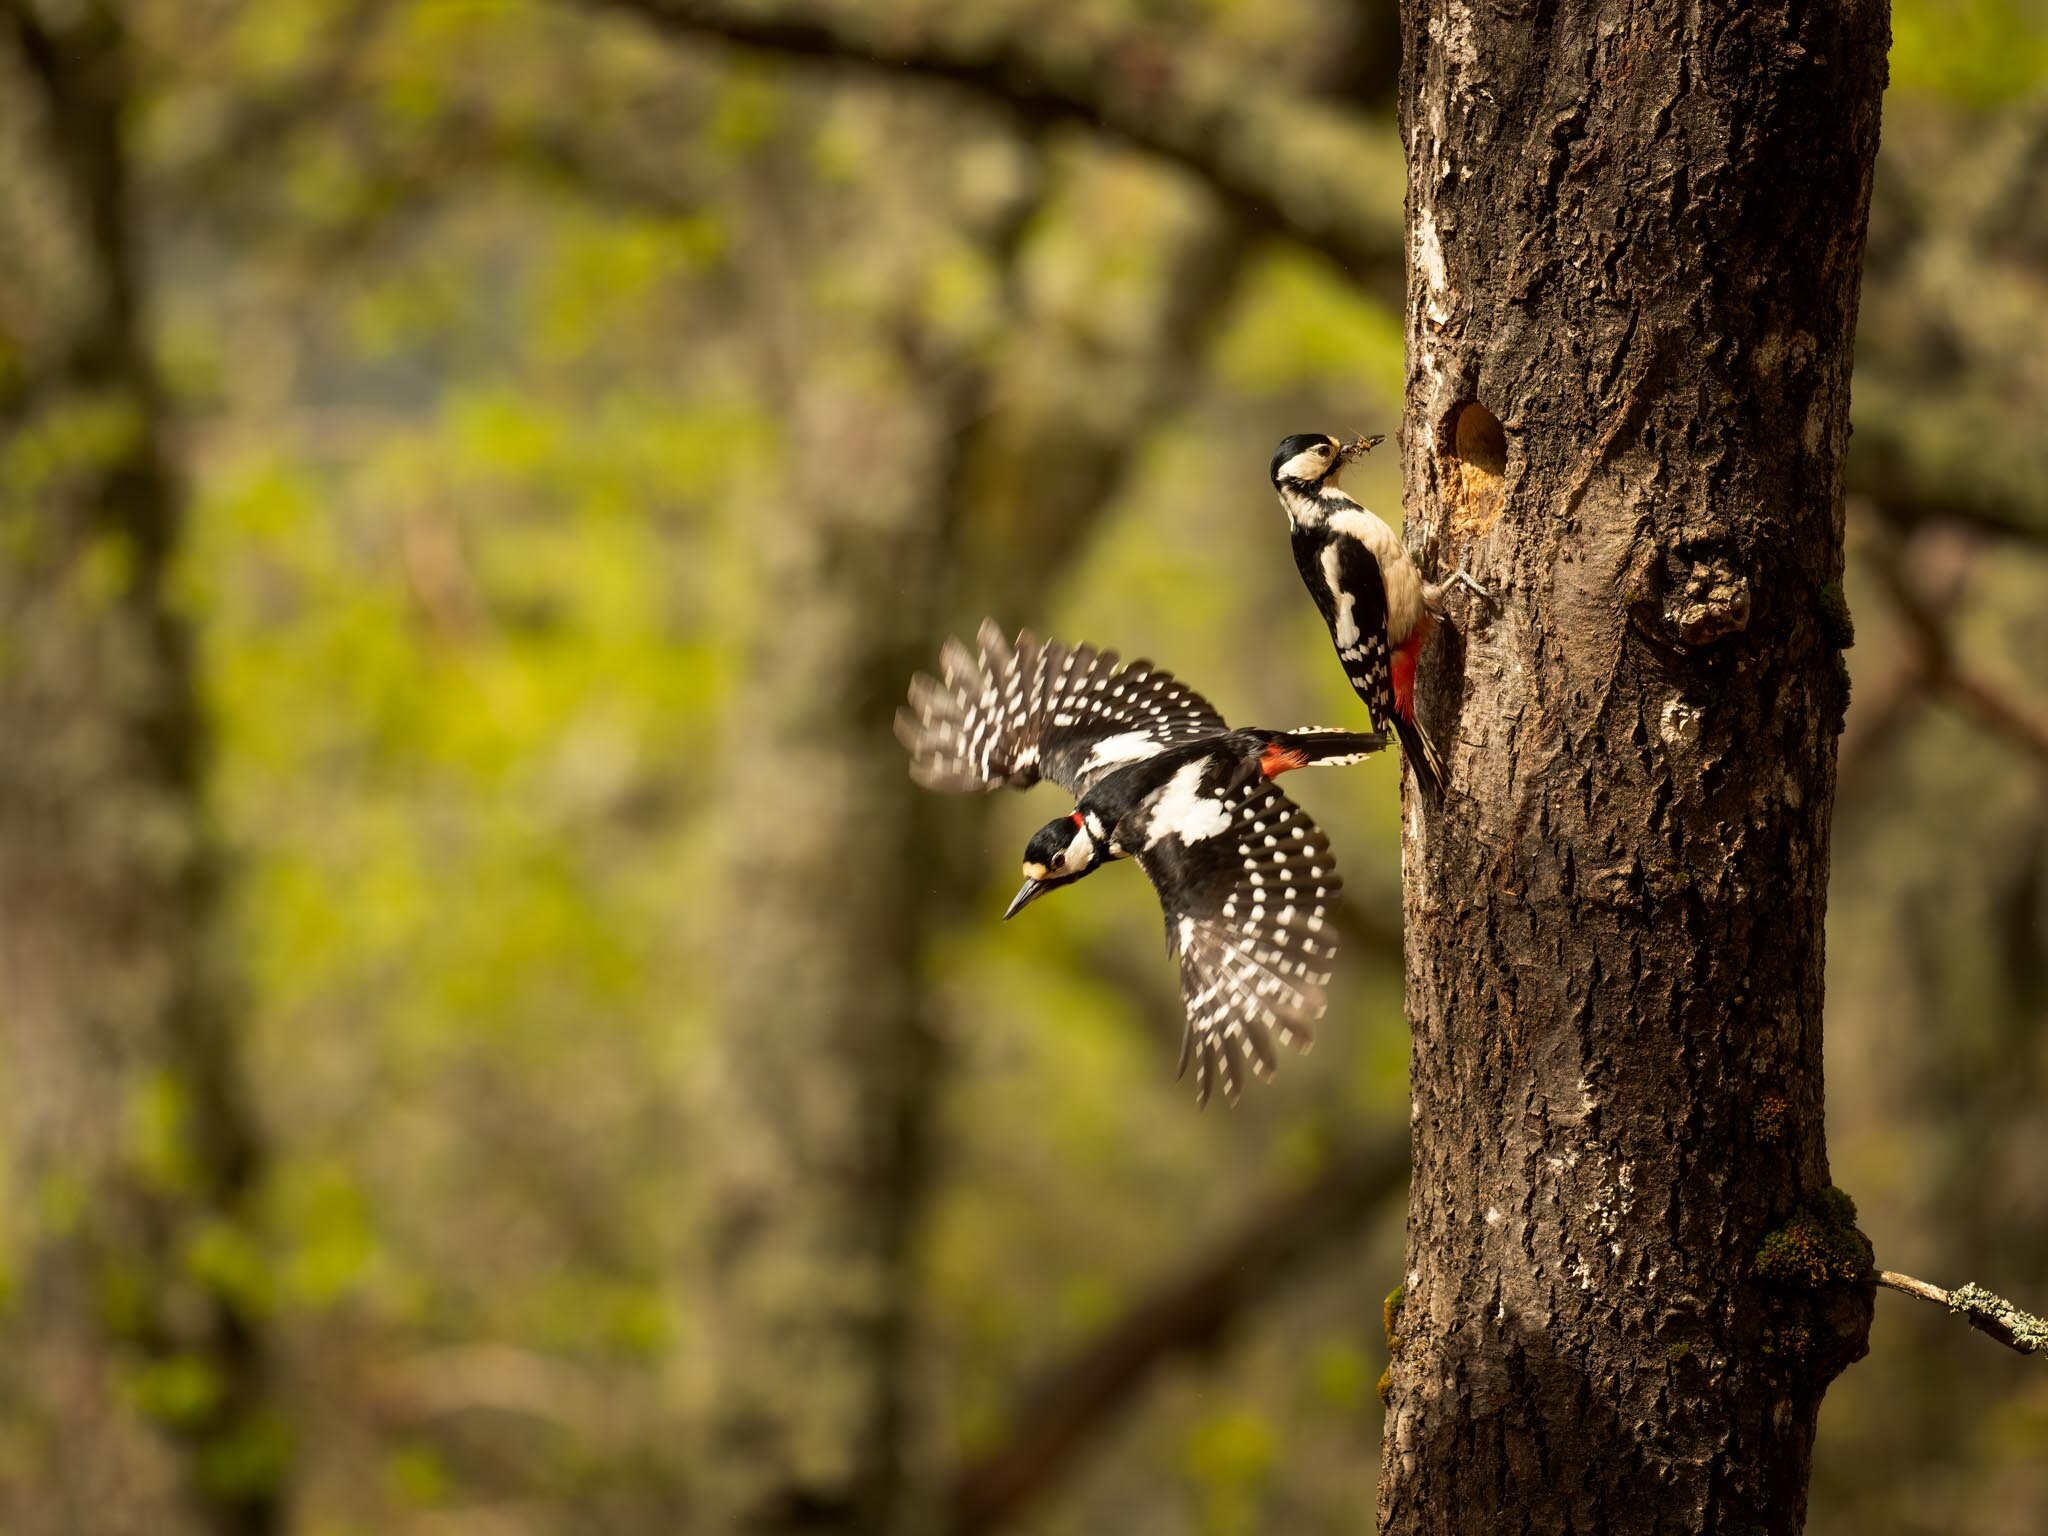 Gelijkenis Samenstelling Maken pro-capture-settings-for-birds-in-flight — Espen Helland Photography